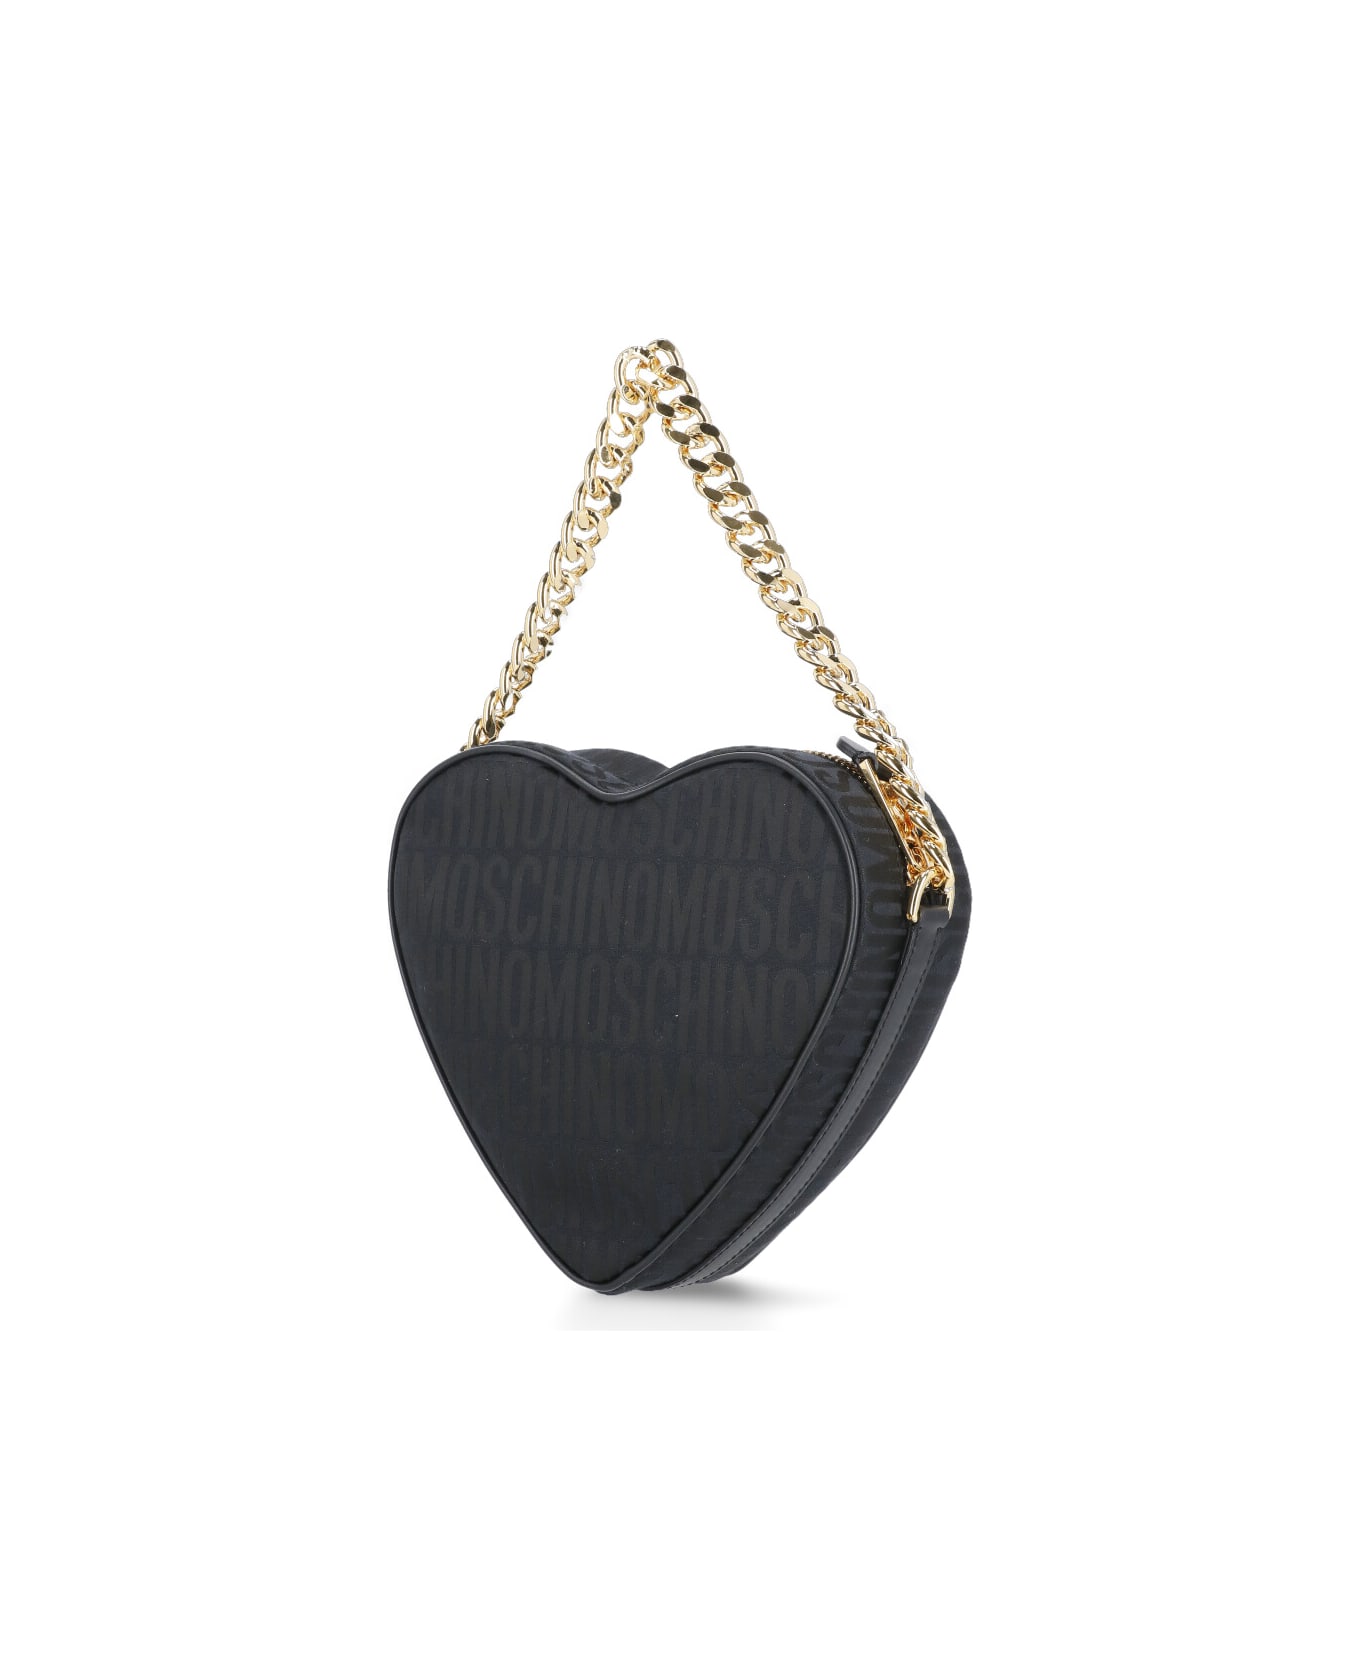 Moschino Shoulder Bag With Logo - Black